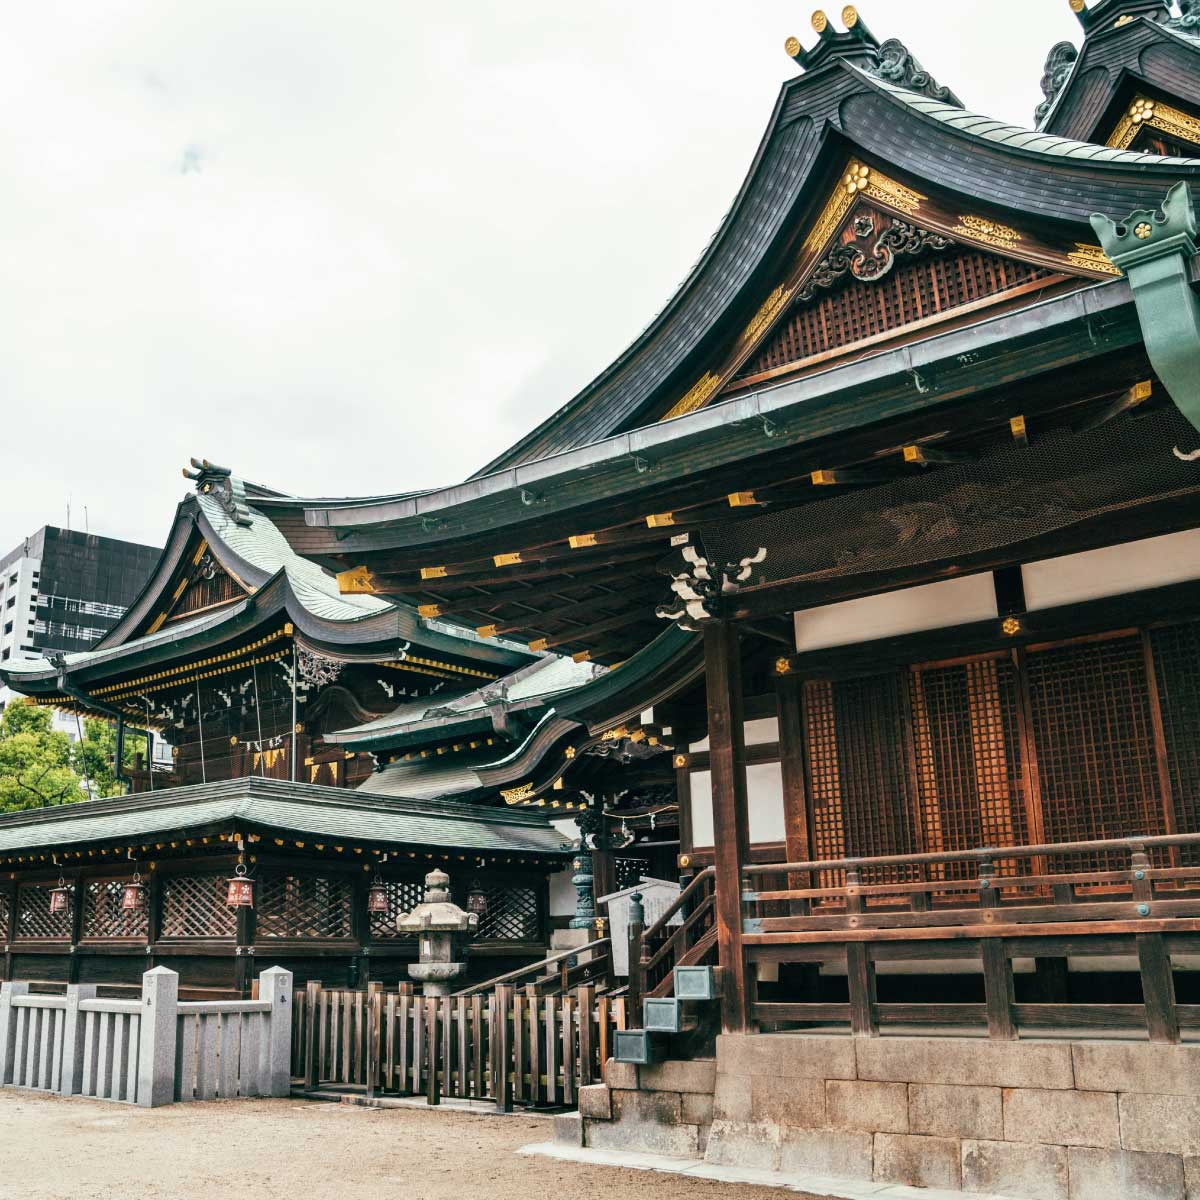 เที่ยวศาลเจ้าโอซาก้าเทมมังงุ (Osaka Tenmangu Shrine)